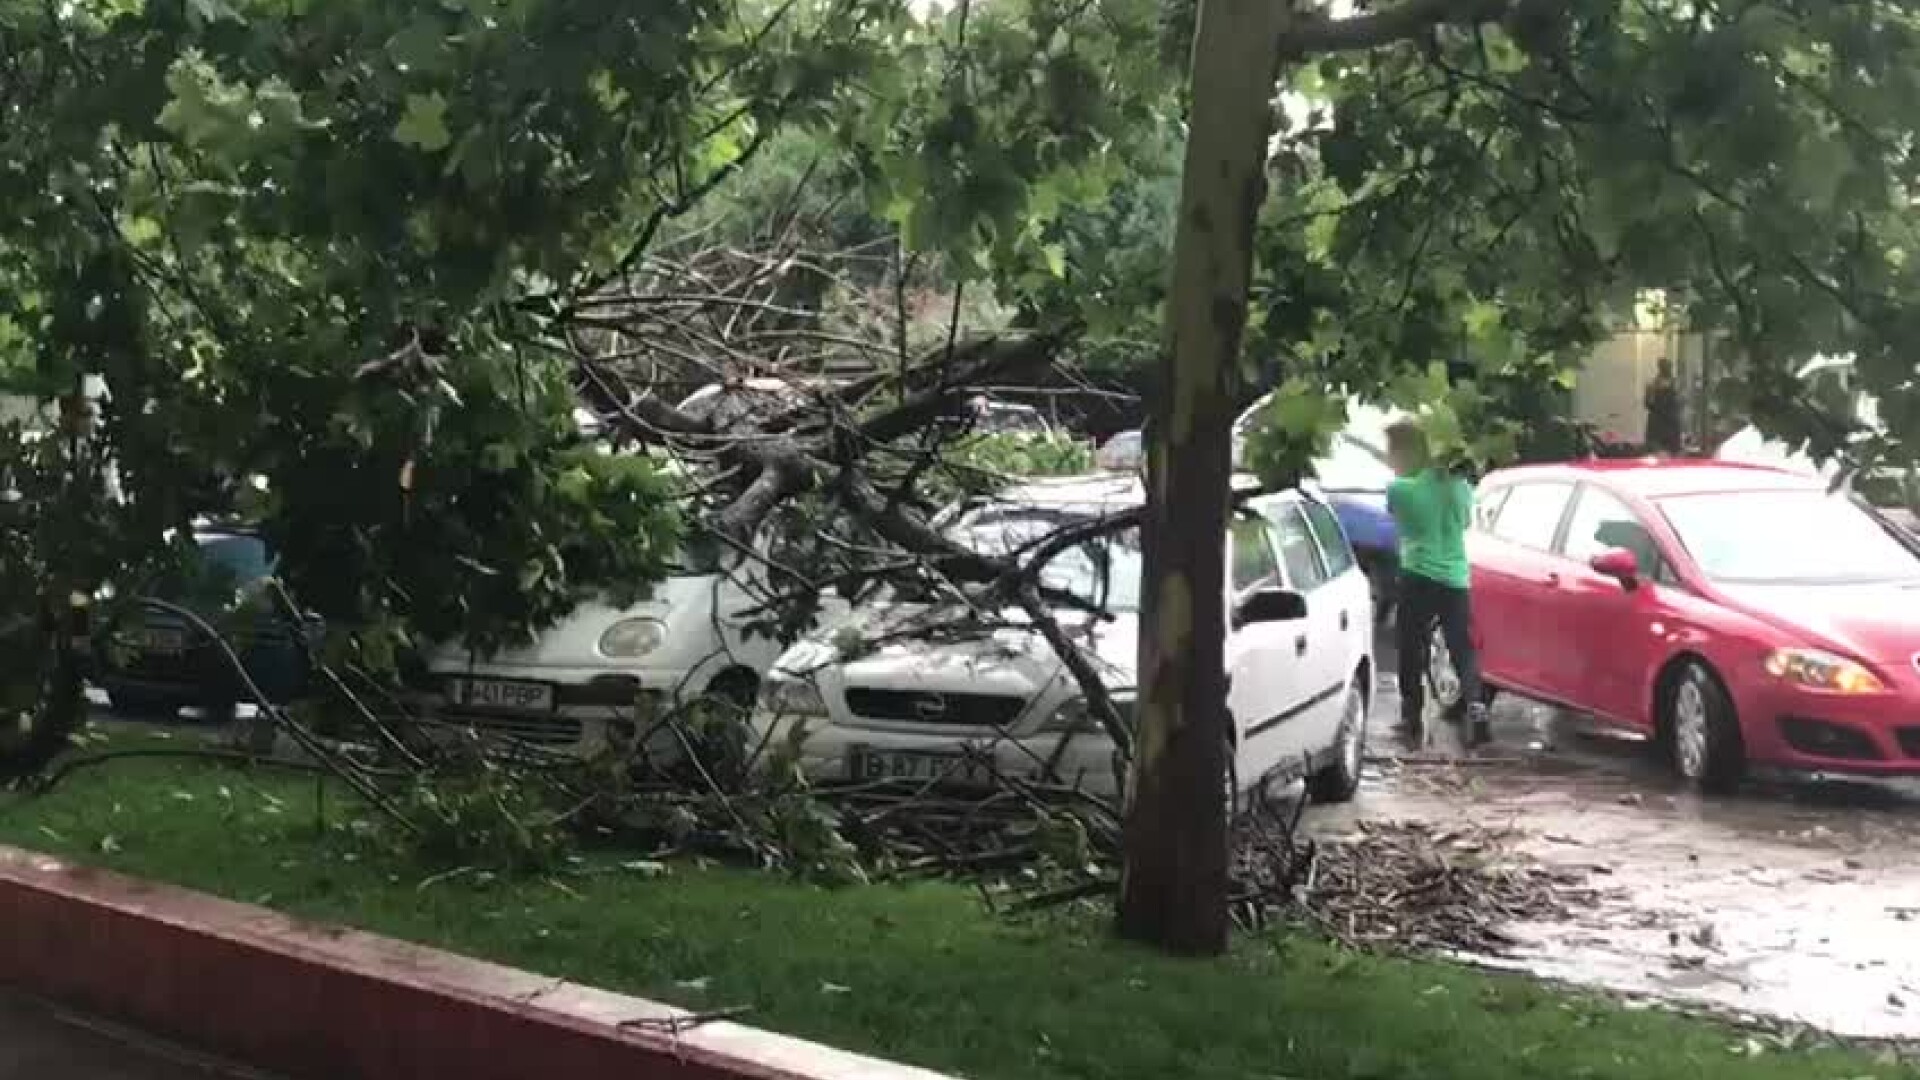 furtuna in Bucuresti